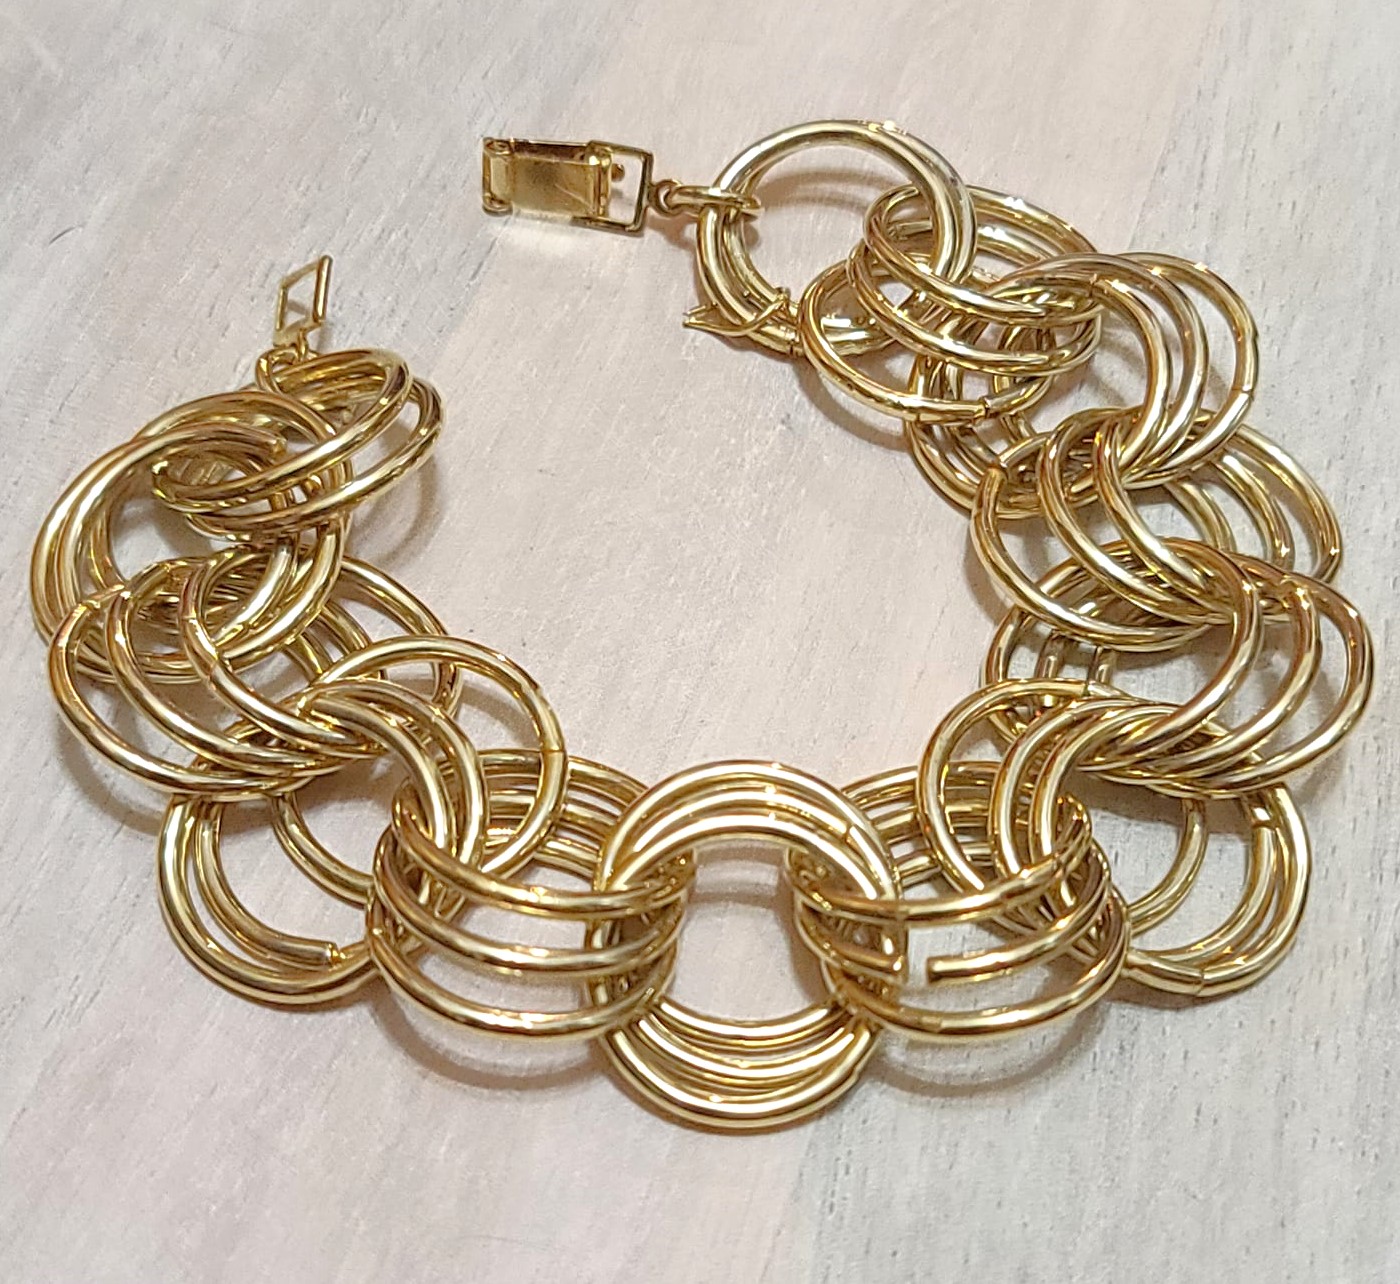 Vintage goldtone bracelet, link style with triple round link design